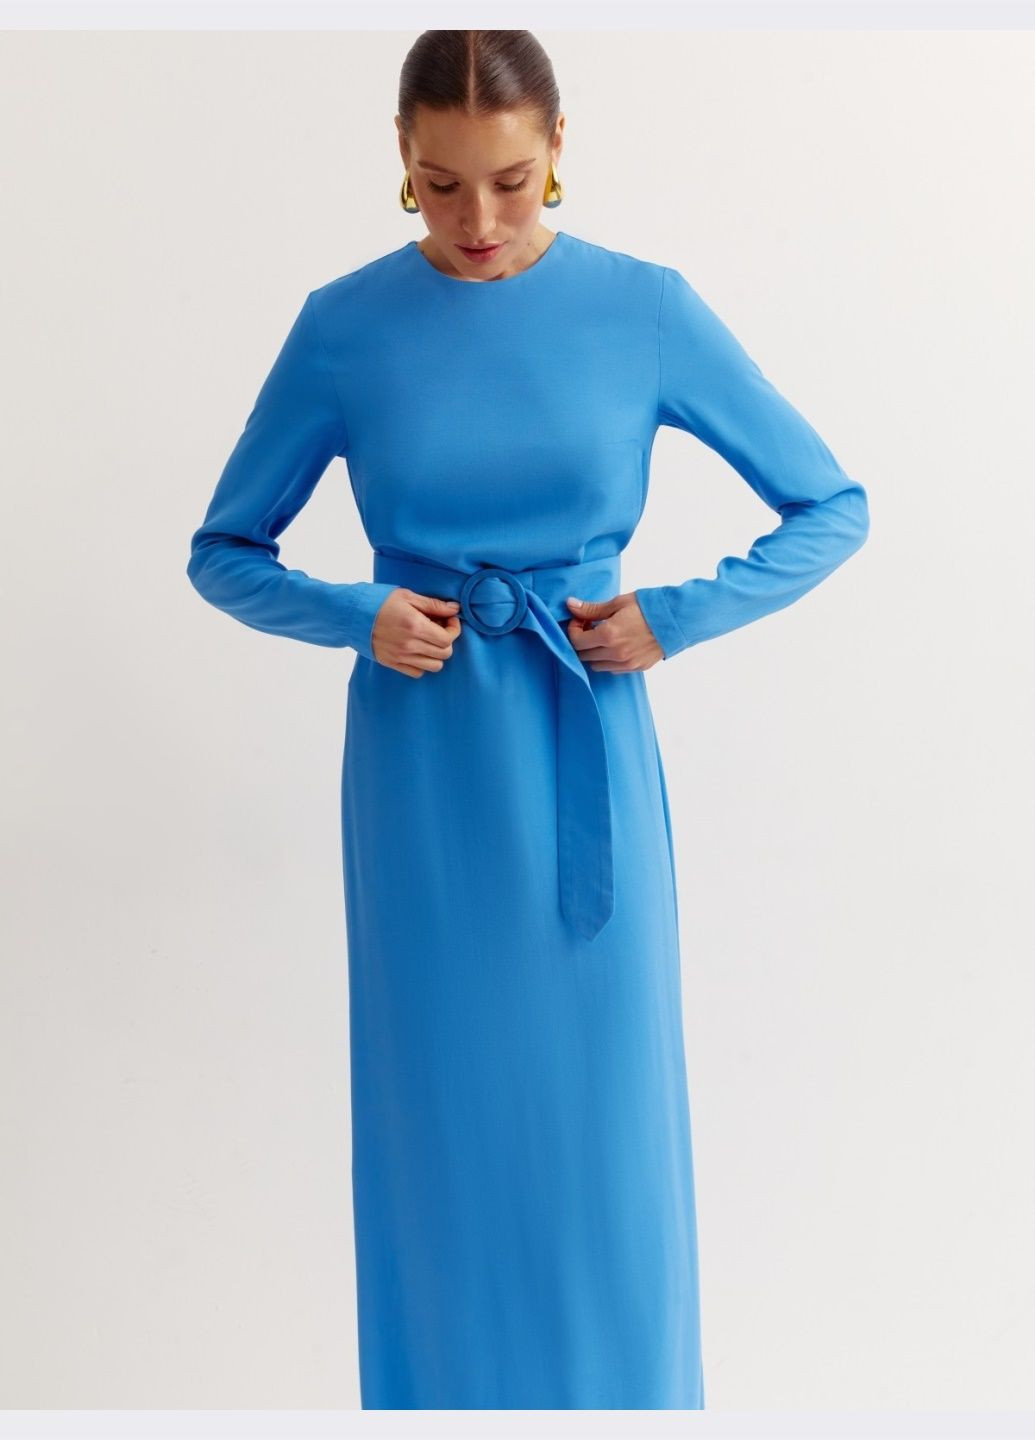 Синее длинное платье синего цвета с поясом Dressa